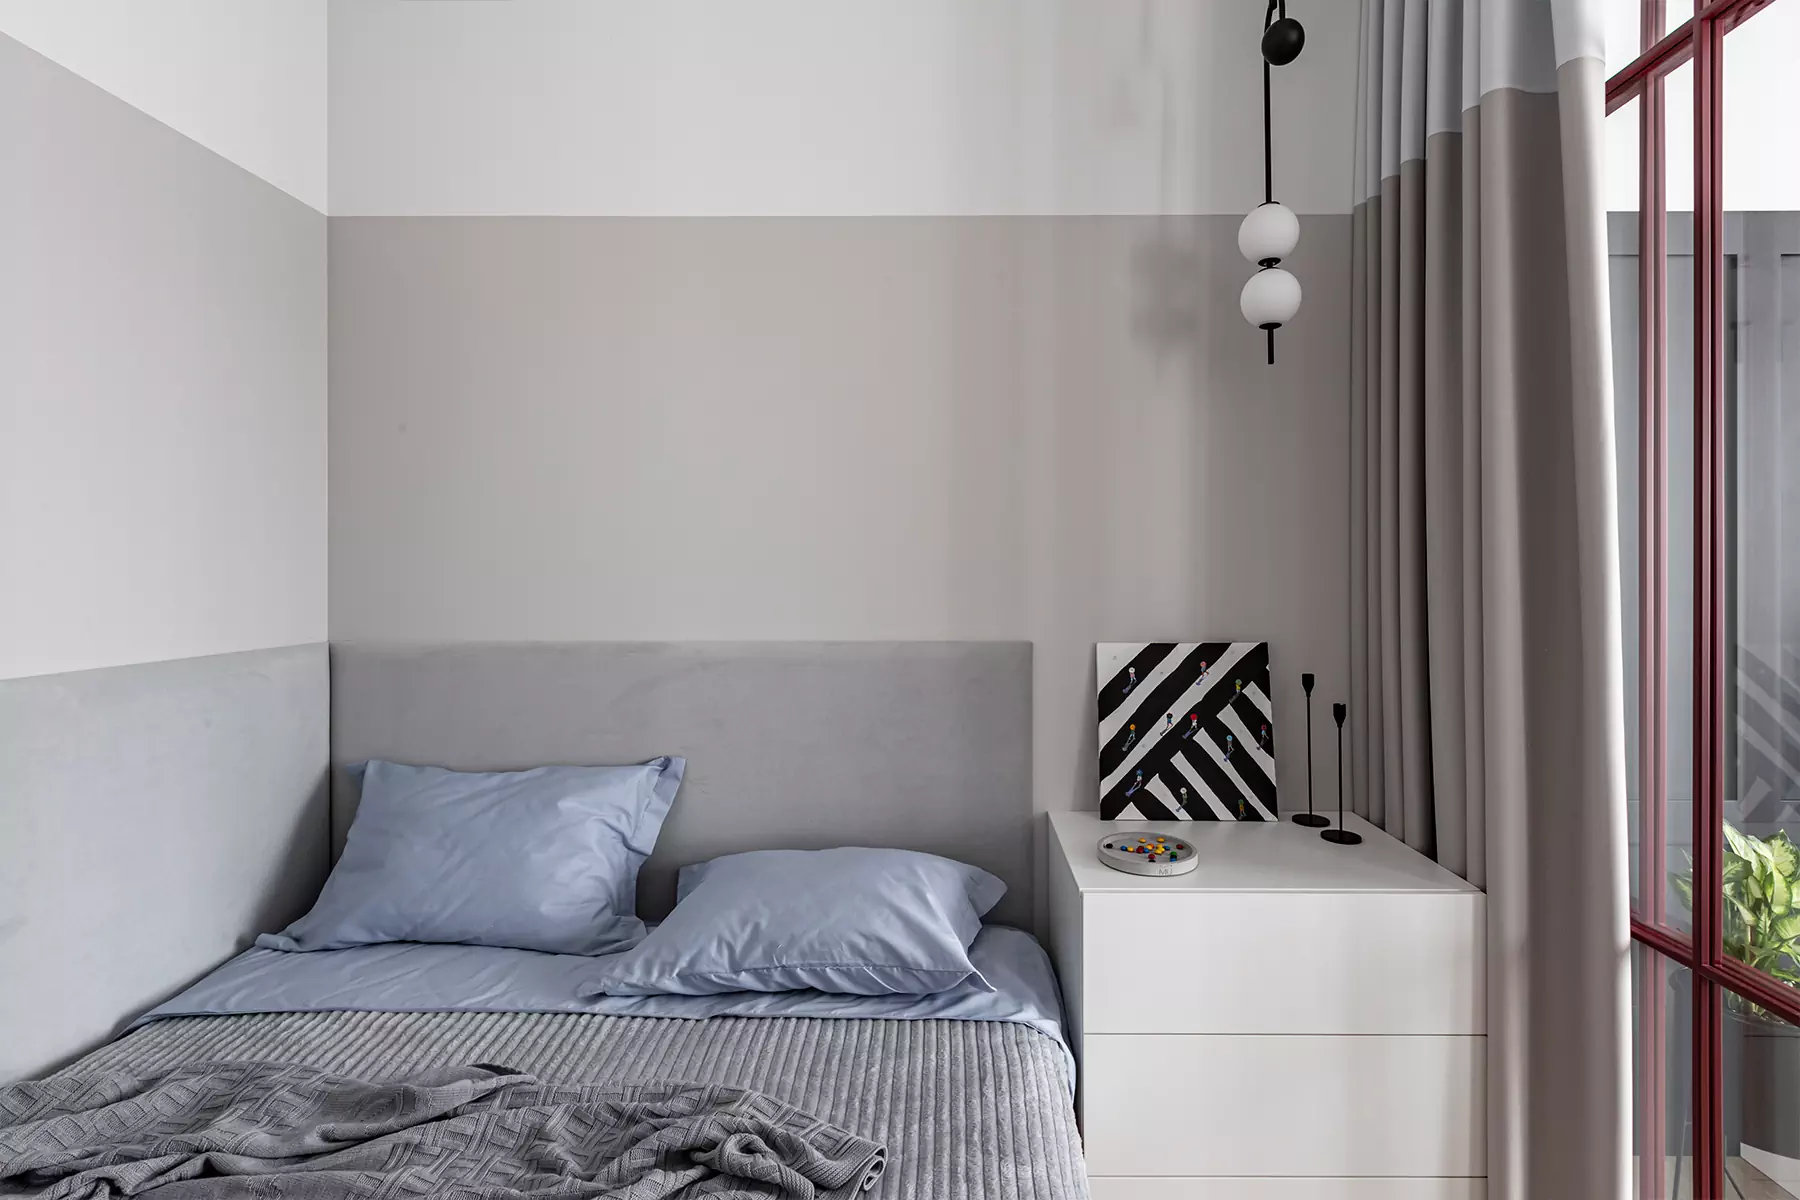 Бордовые перегородки и изумрудные детали в интерьере небольшой квартиры — проект DESIGNER ZDES